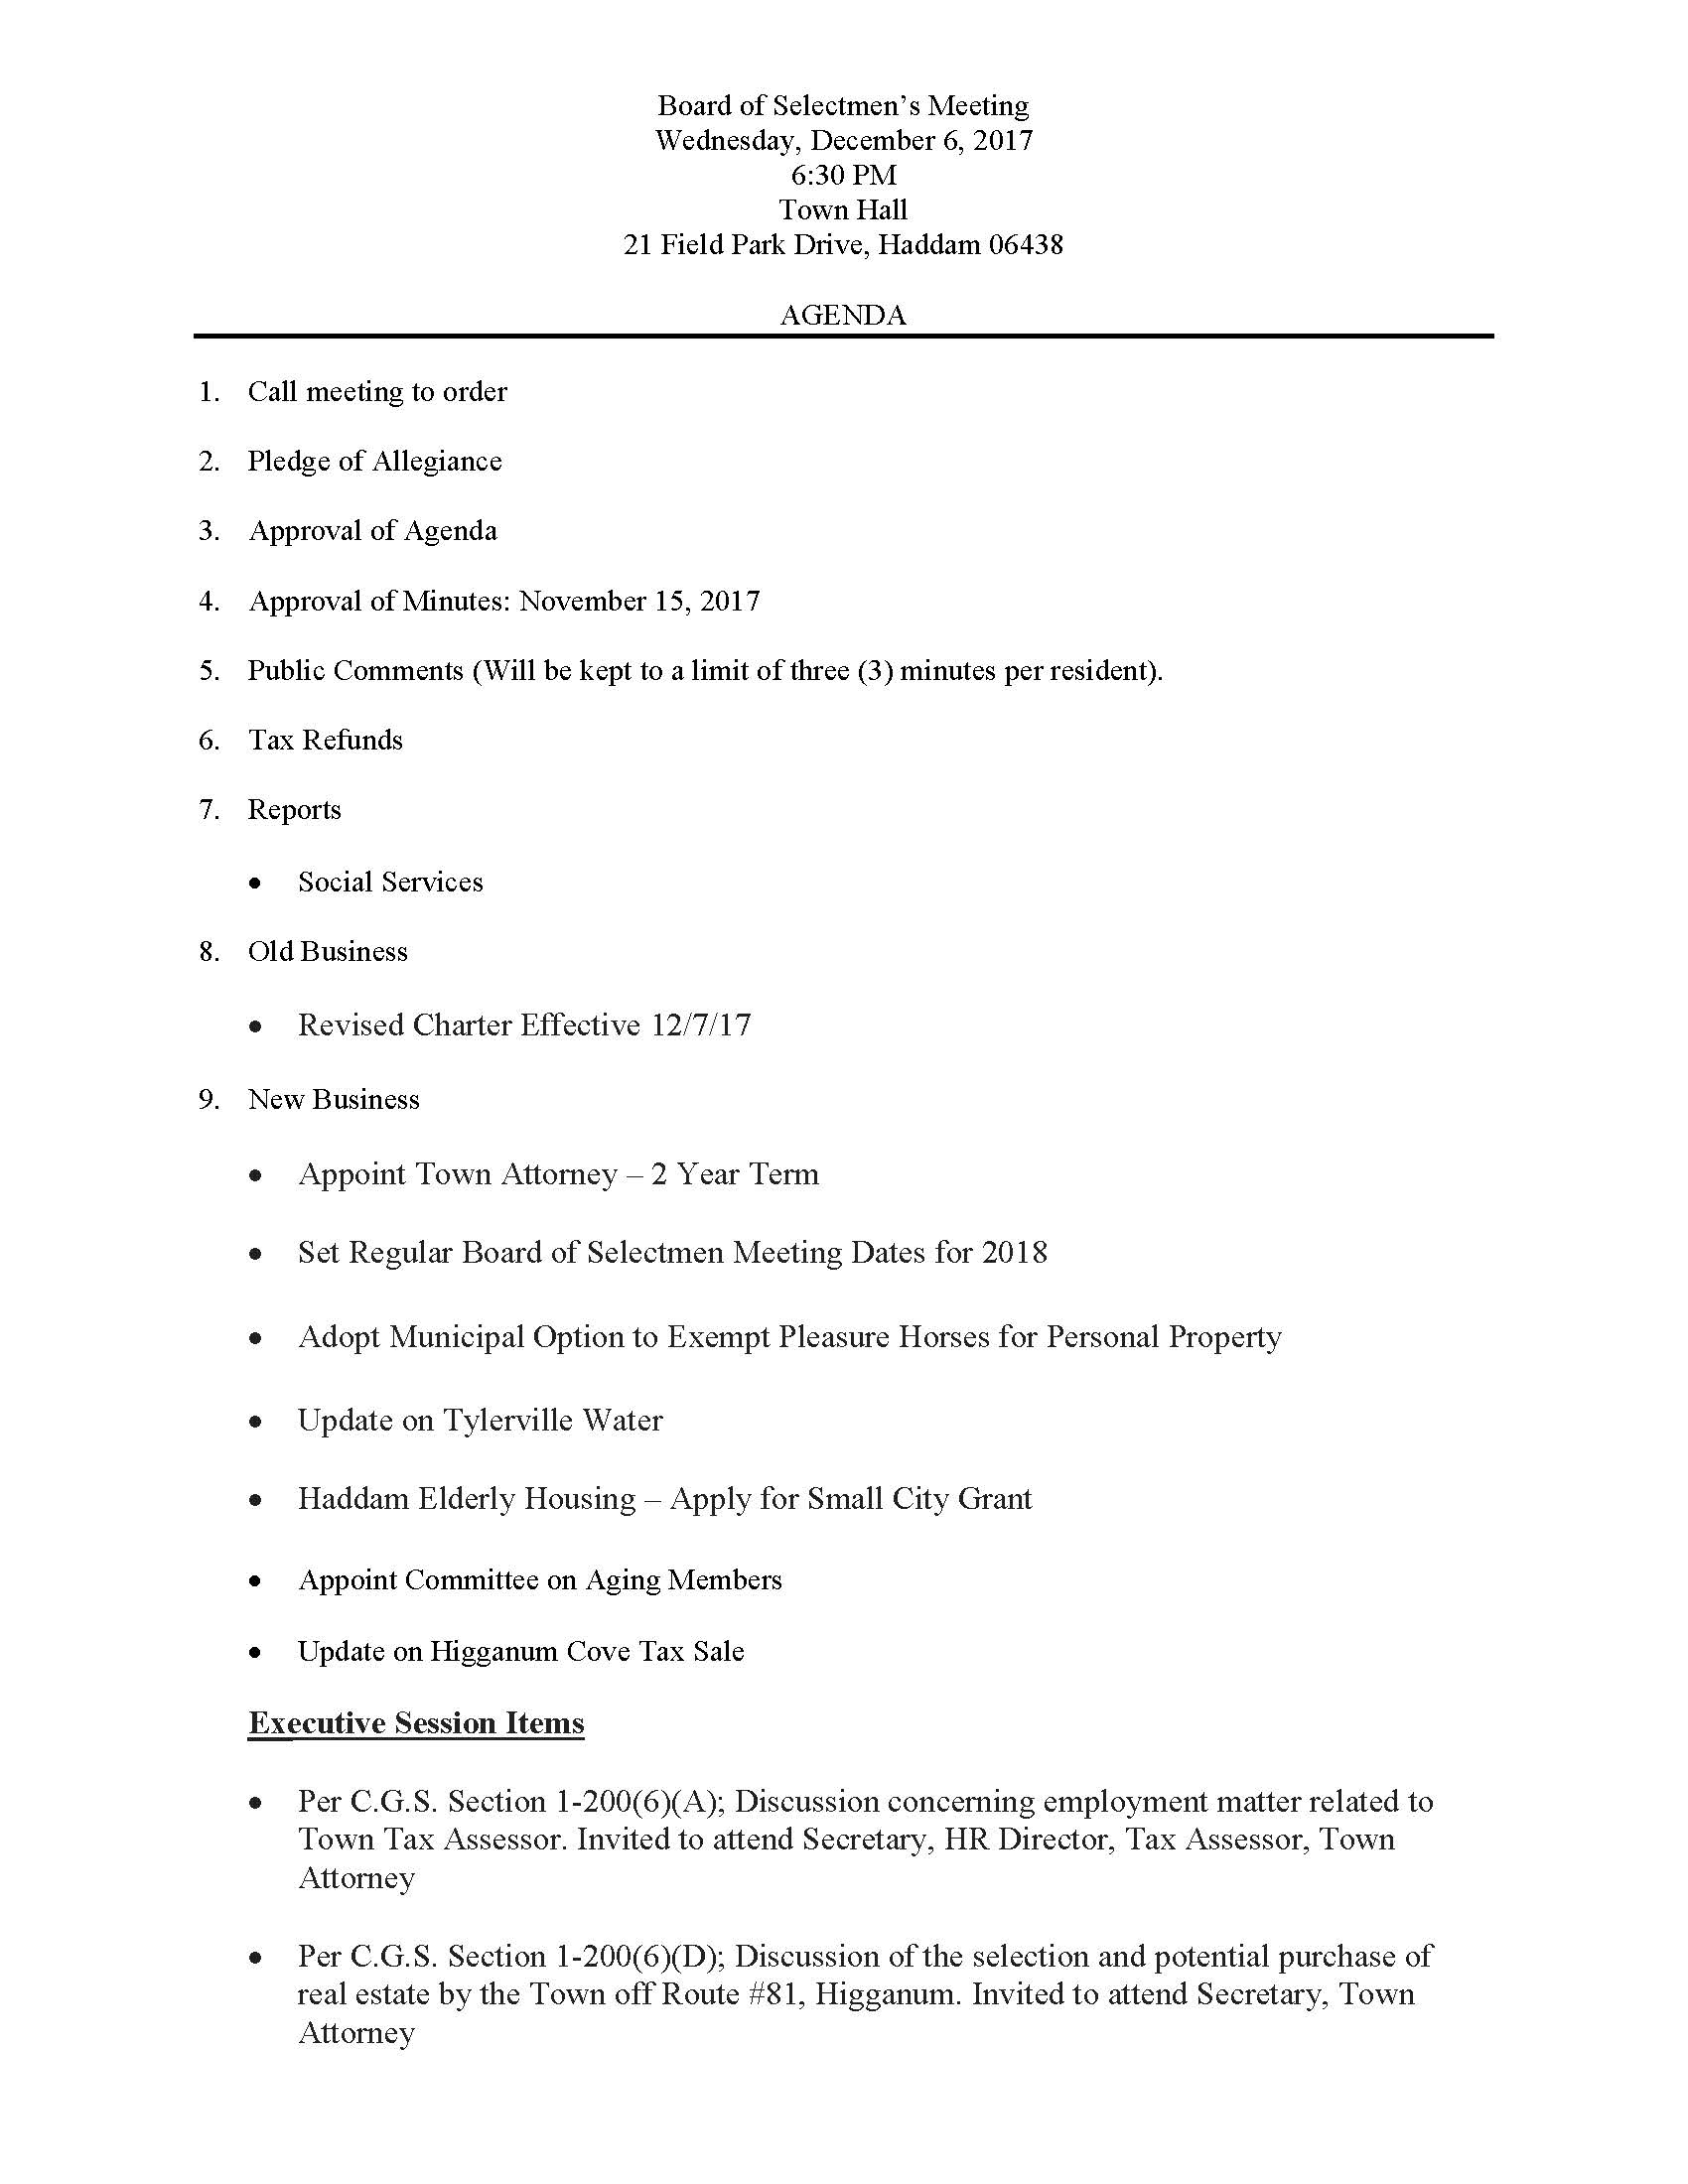 12-6-17 BOS Agenda_Page_1